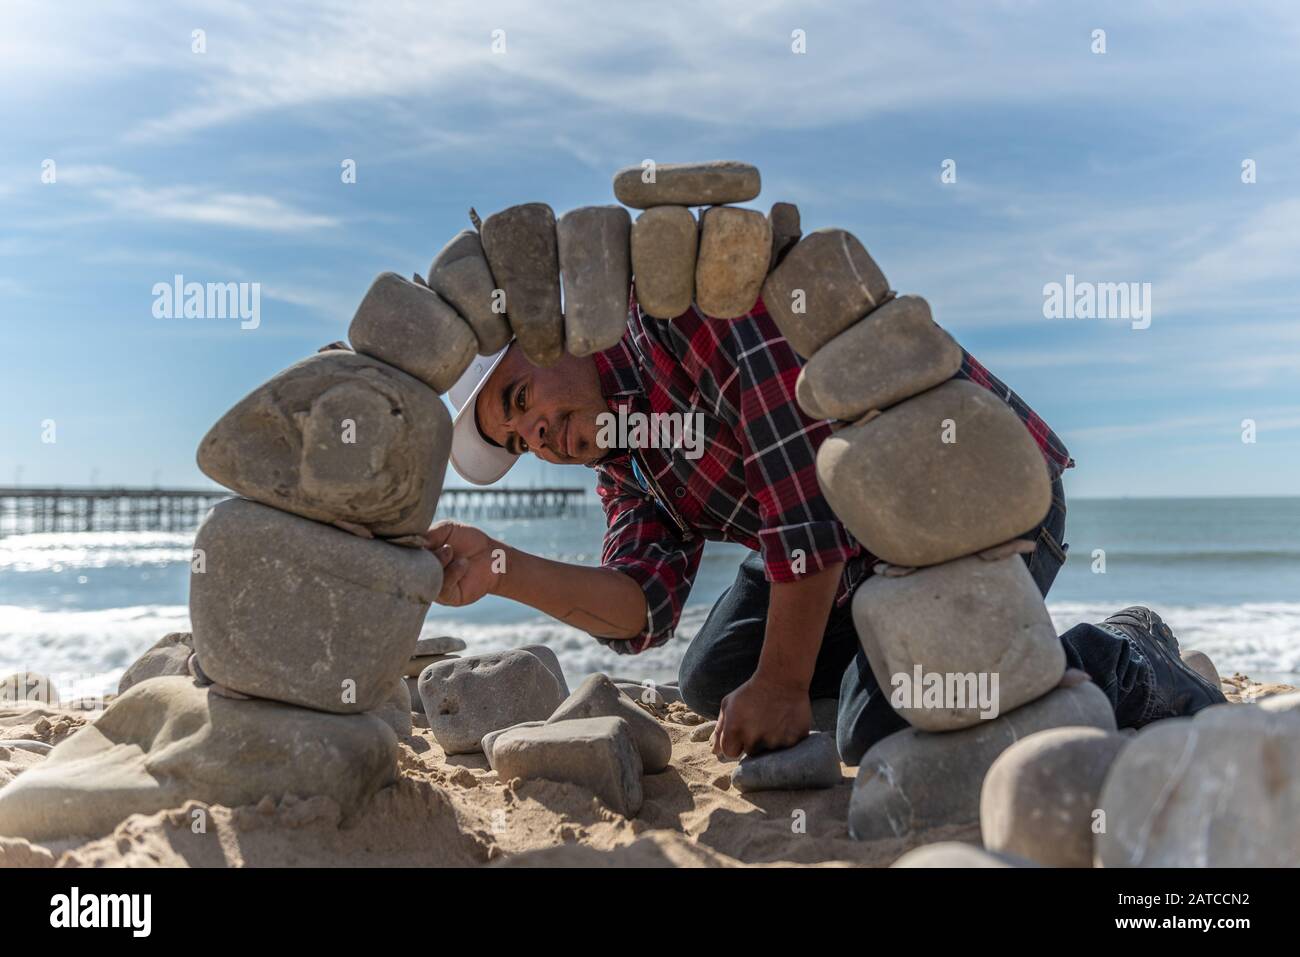 Juan Manuel Cisneros guarda attraverso l'apertura di pietra, mentre la costruzione dell'arco ingegnerizzato da roccia del fiume sulla spiaggia di Ventura il 30 gennaio 2020 i Foto Stock